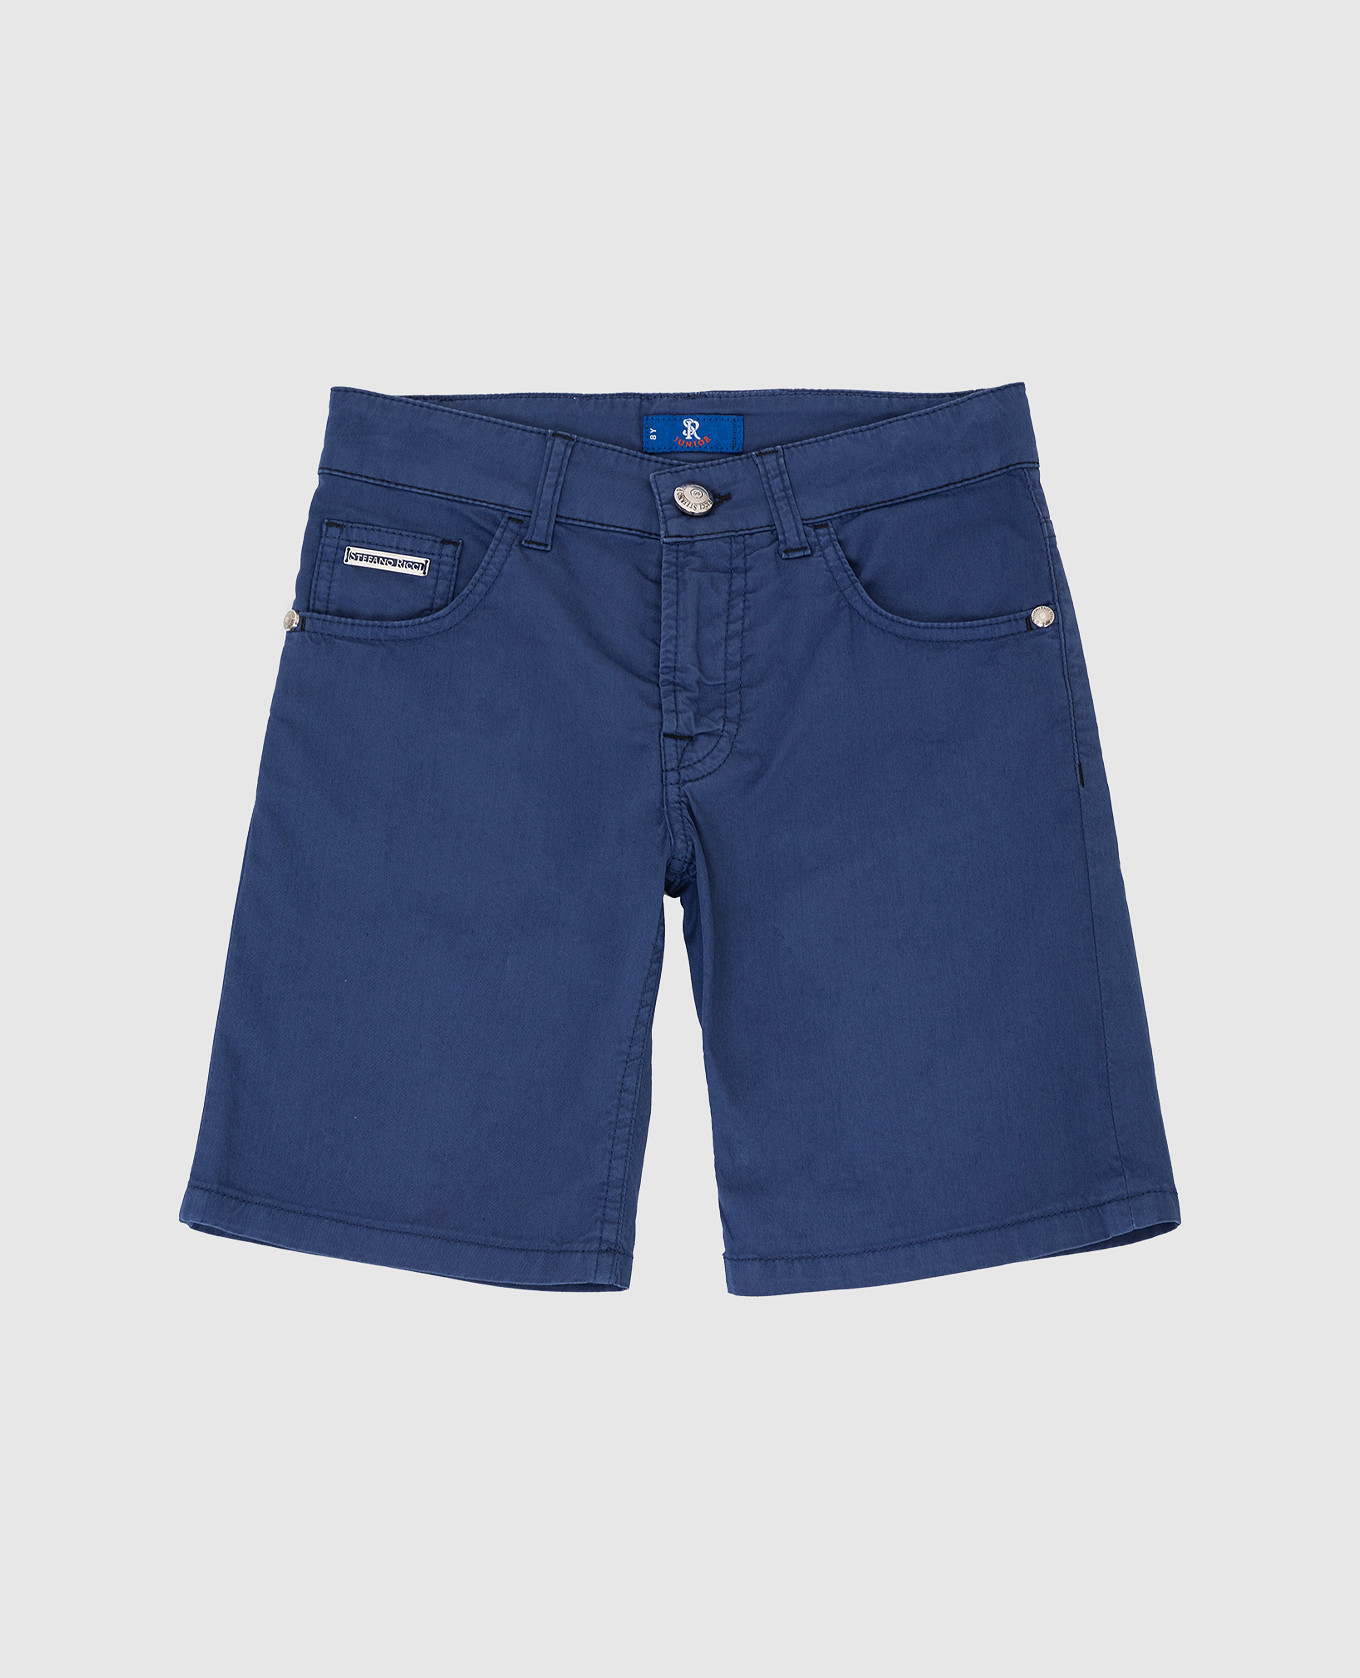 Children's dark blue shorts